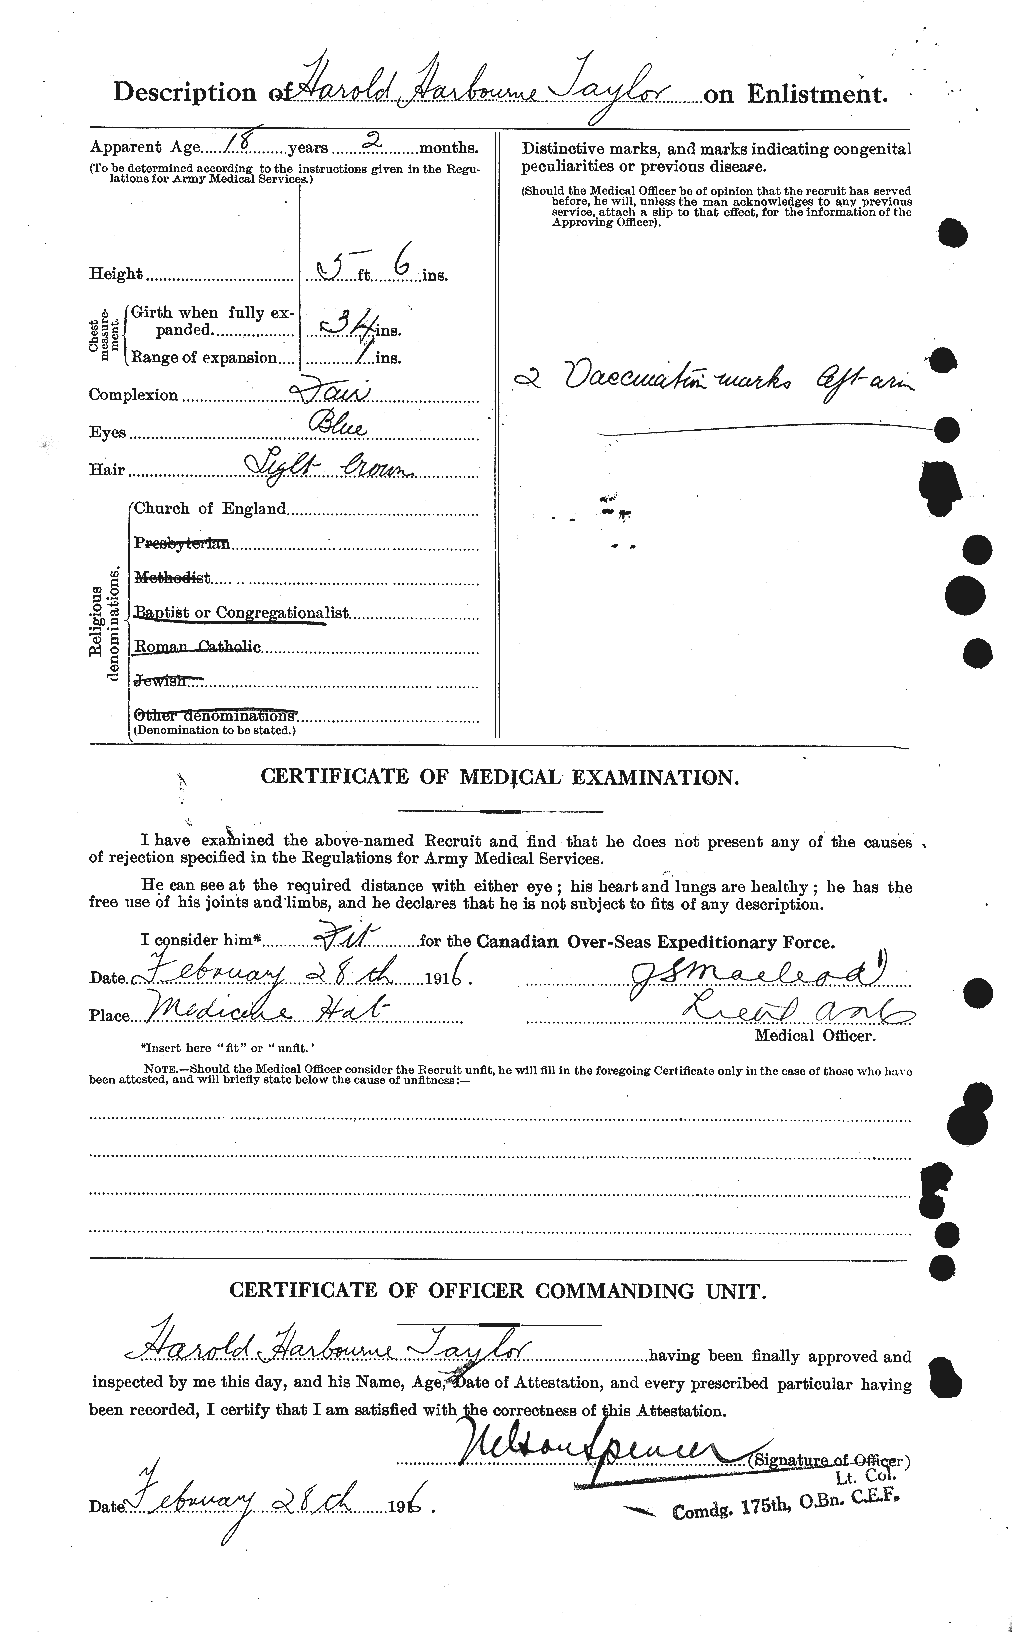 Dossiers du Personnel de la Première Guerre mondiale - CEC 626422b